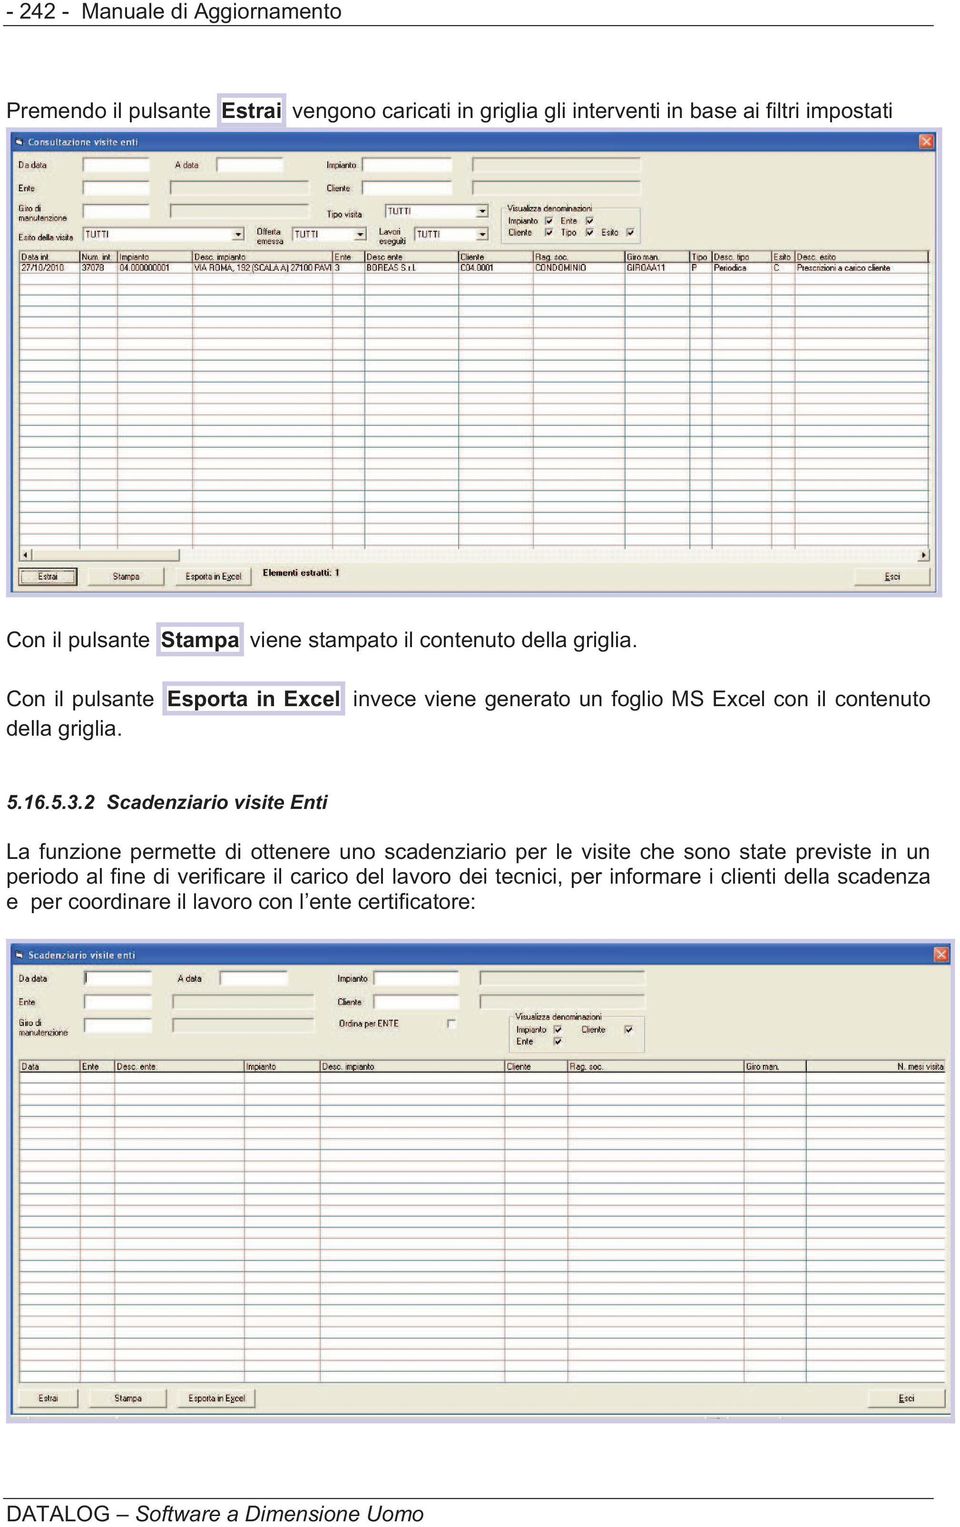 Con il pulsante Esporta in Excel invece viene generato un foglio MS Excel con il contenuto della griglia. 5.16.5.3.